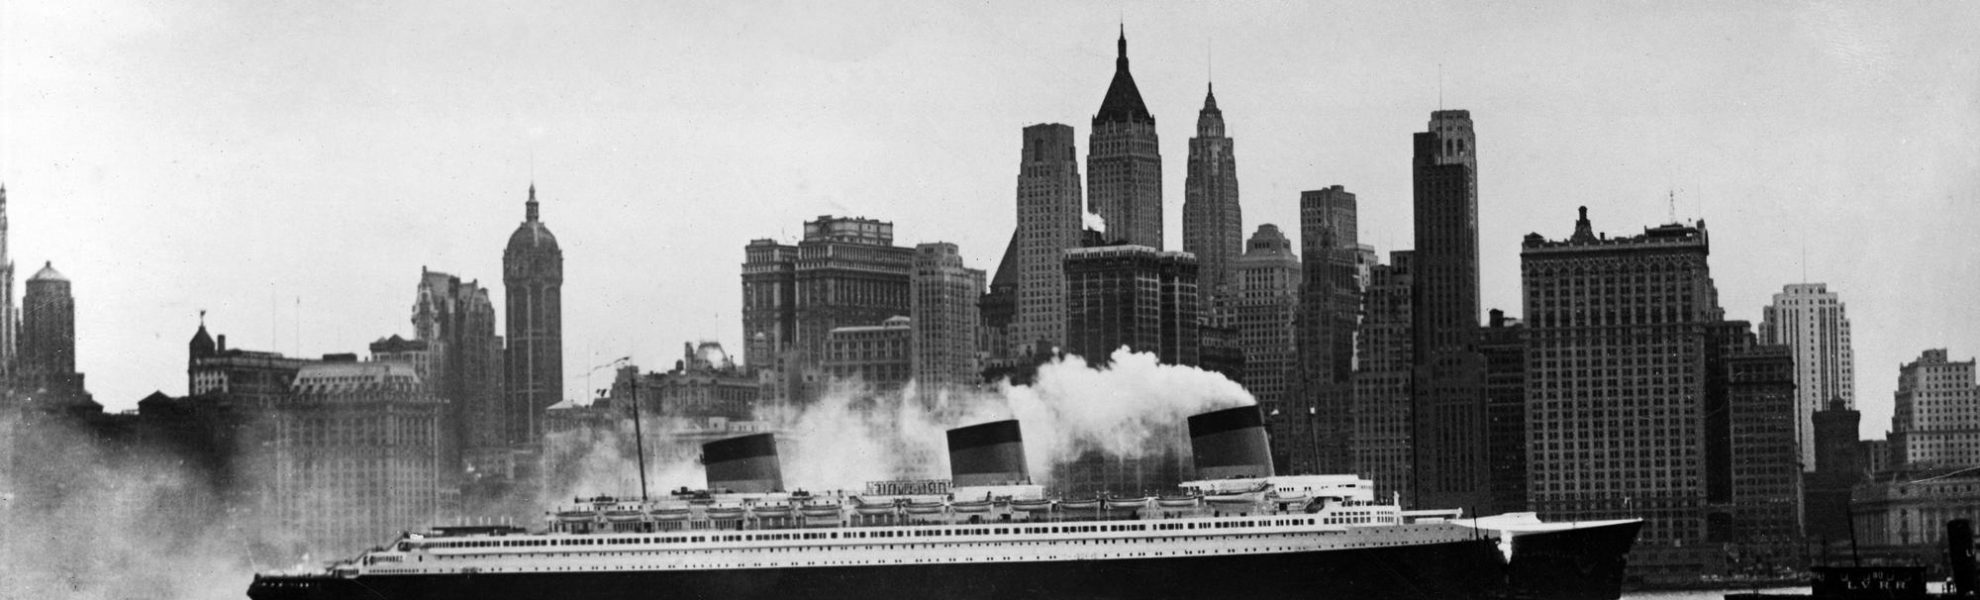 Photographie en noir et blanc représentant le paquebot Normandie devant les immeubles à New York.